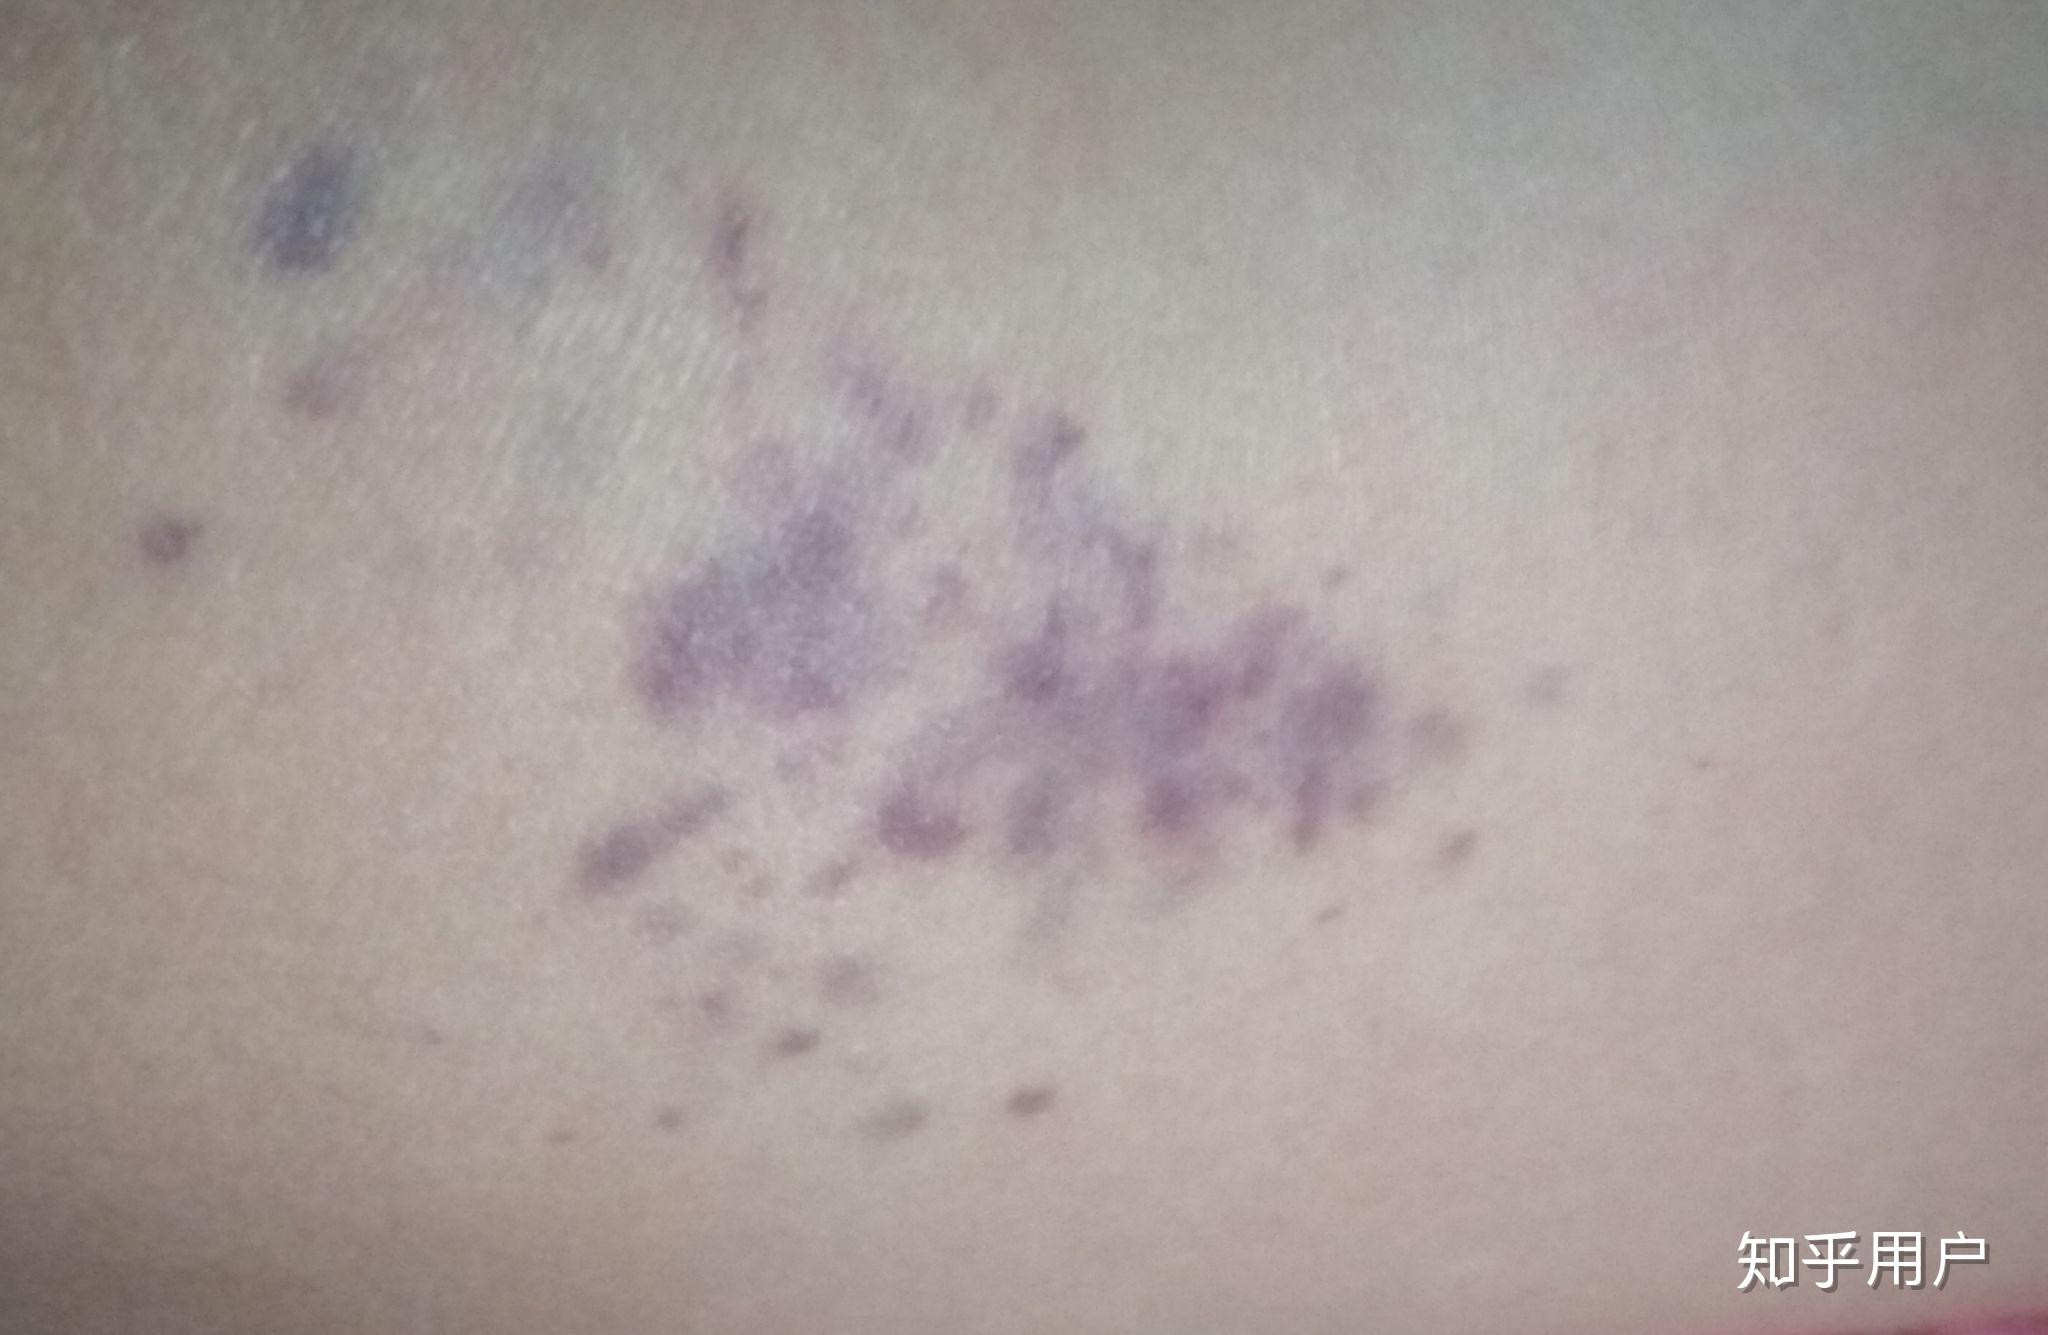 大腿上突然出现一片紫红色斑点不痛不痒是怎么了? 